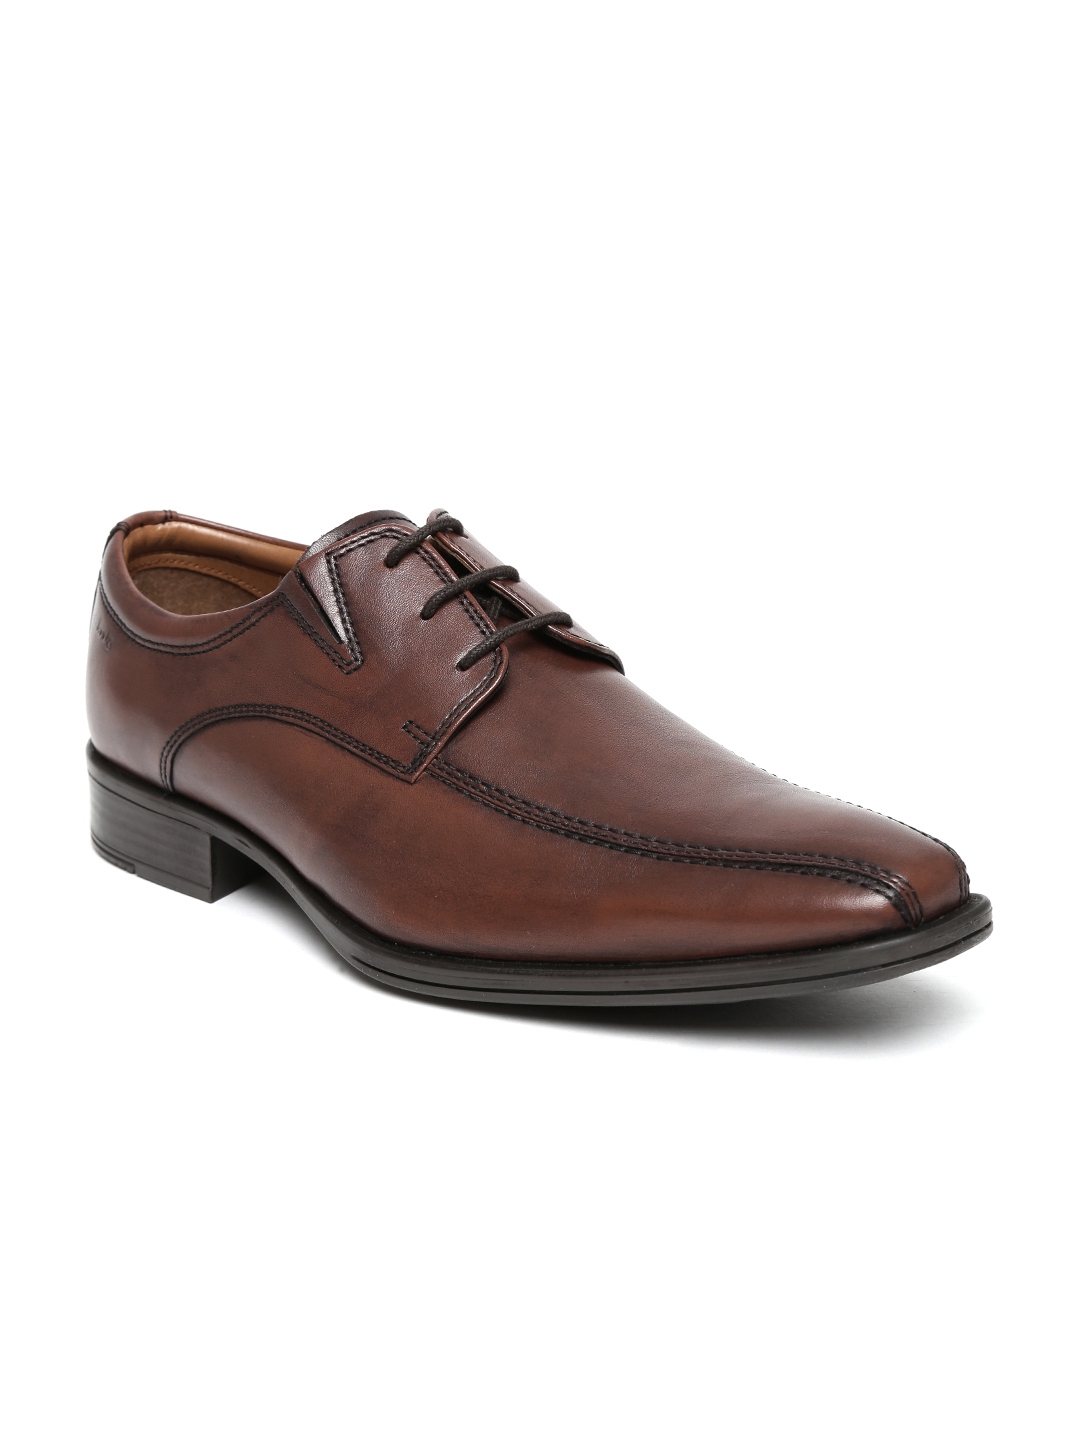 Buy Clarks Men Brown Leather Formal Shoes - Formal Shoes for Men 565938 ...